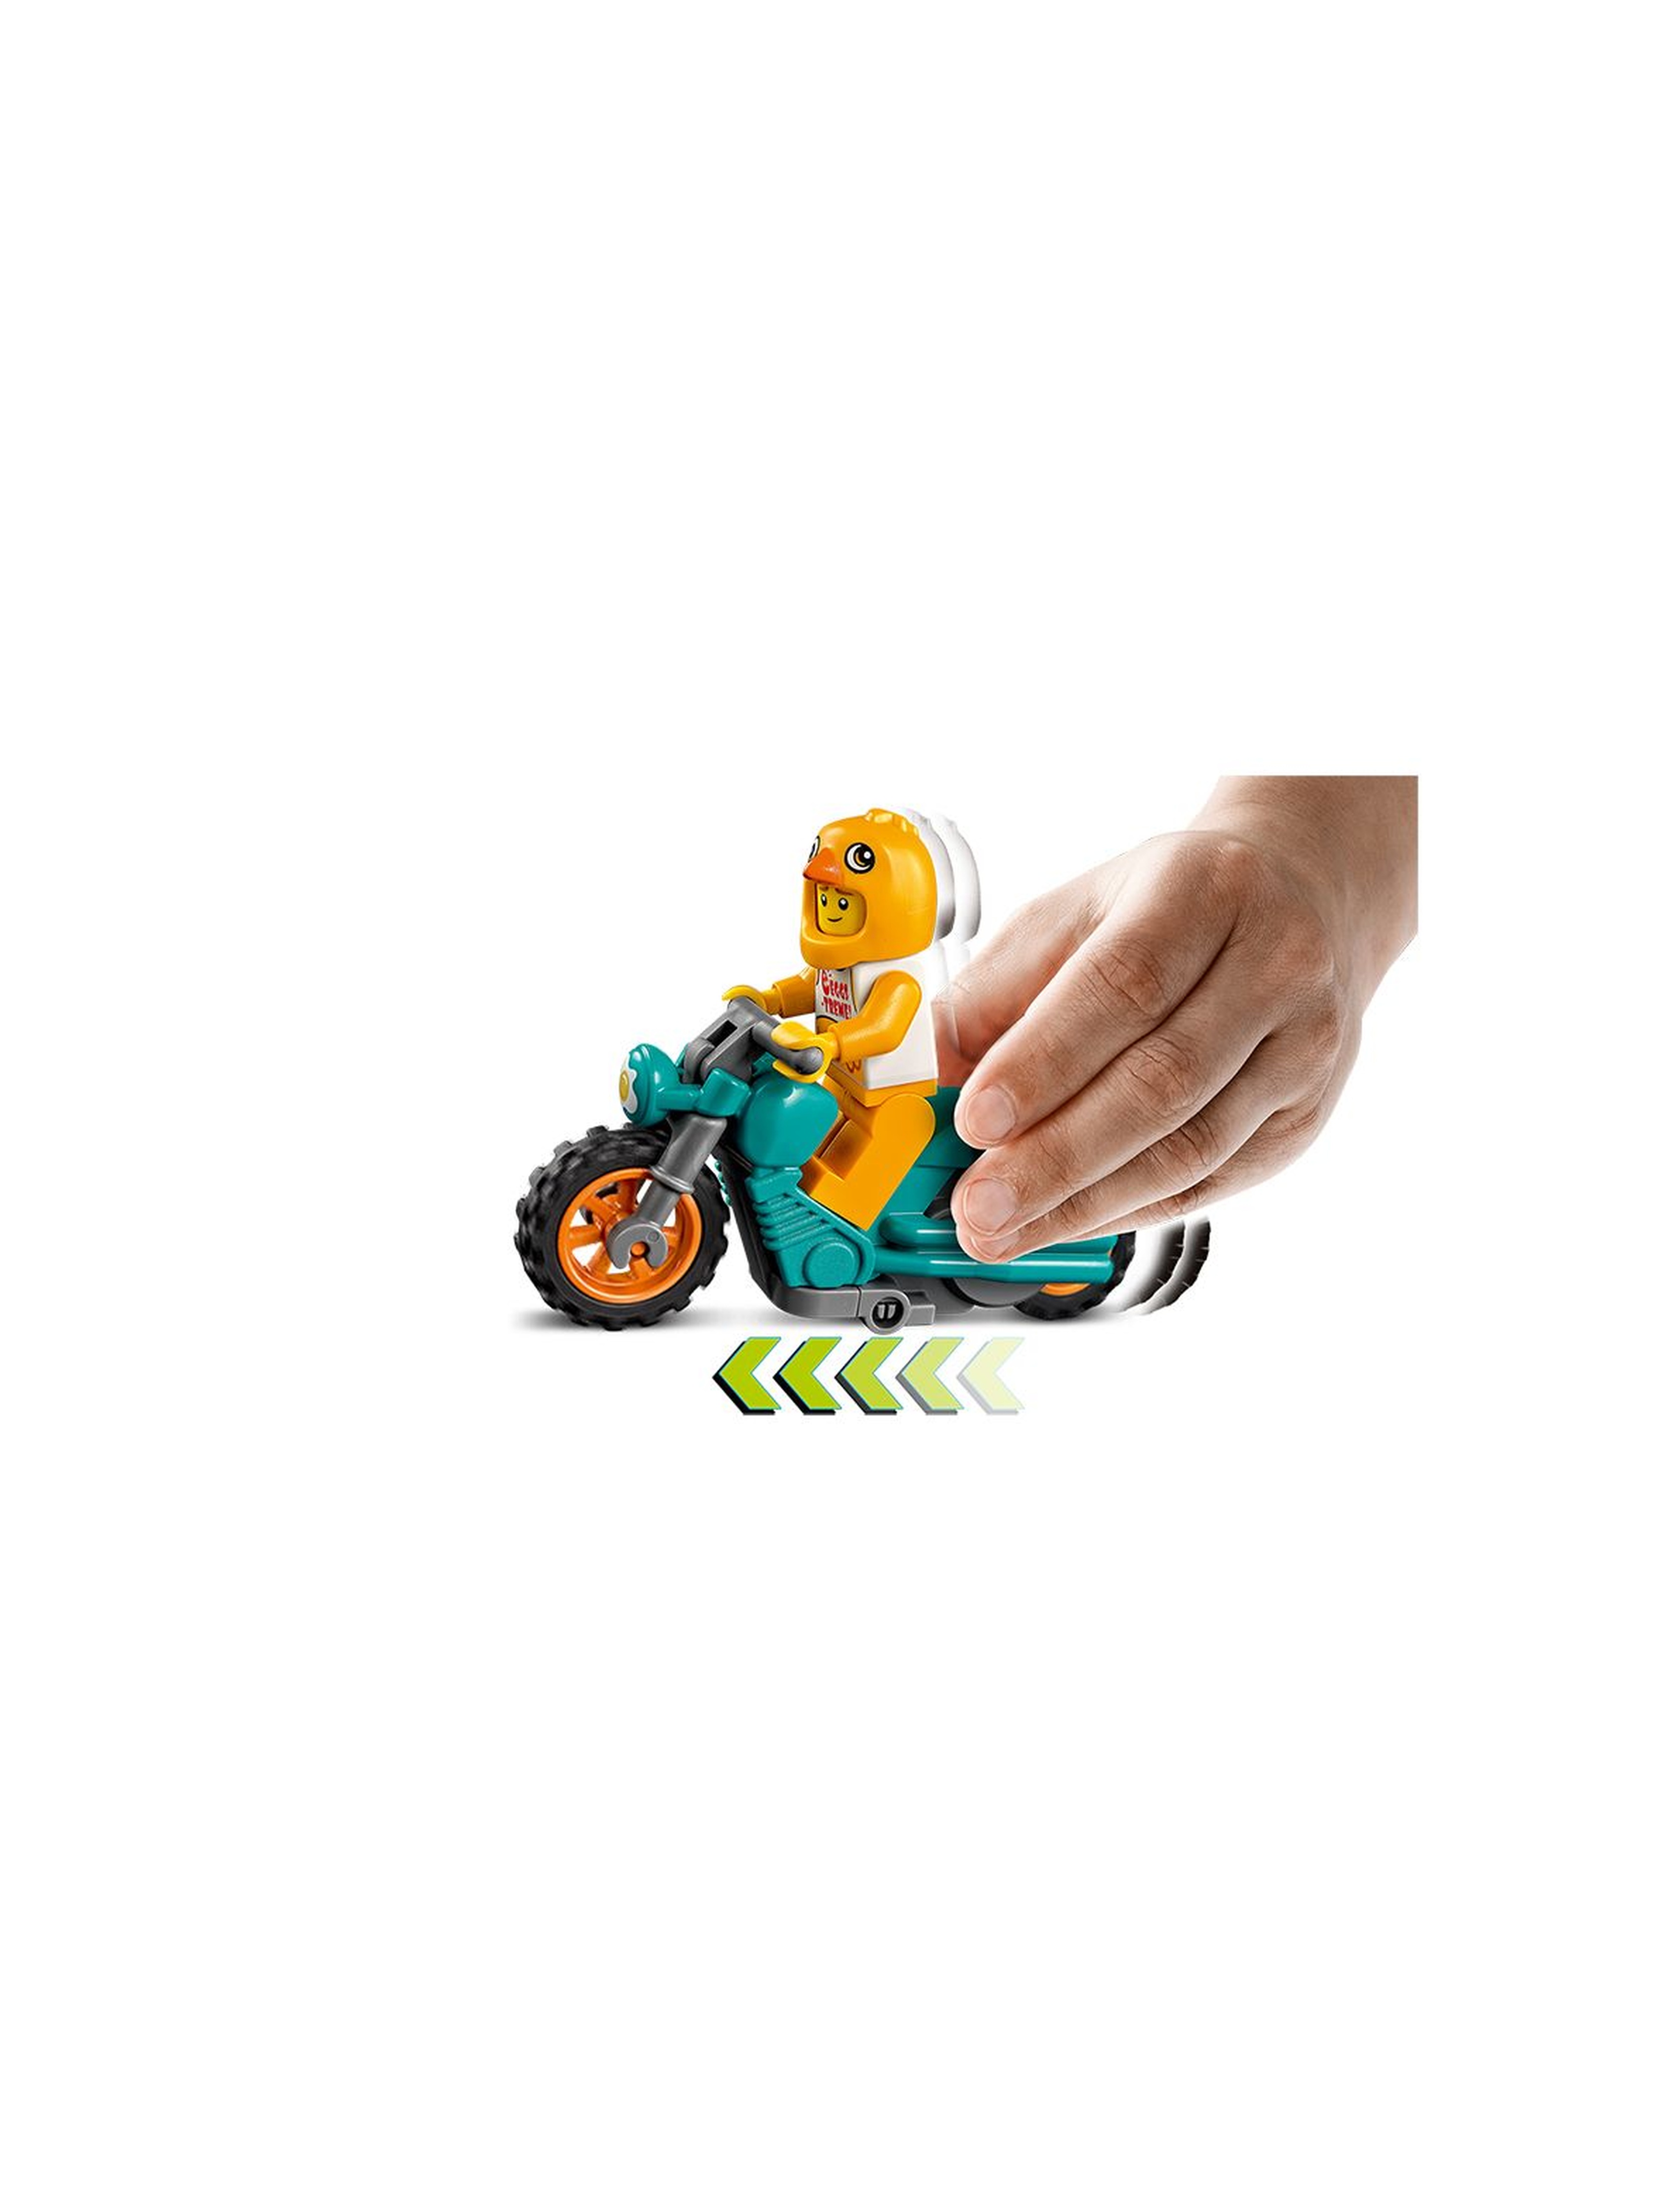 LEGO City 60310 Motocykl kaskaderski z kurczakiem wiek 5+